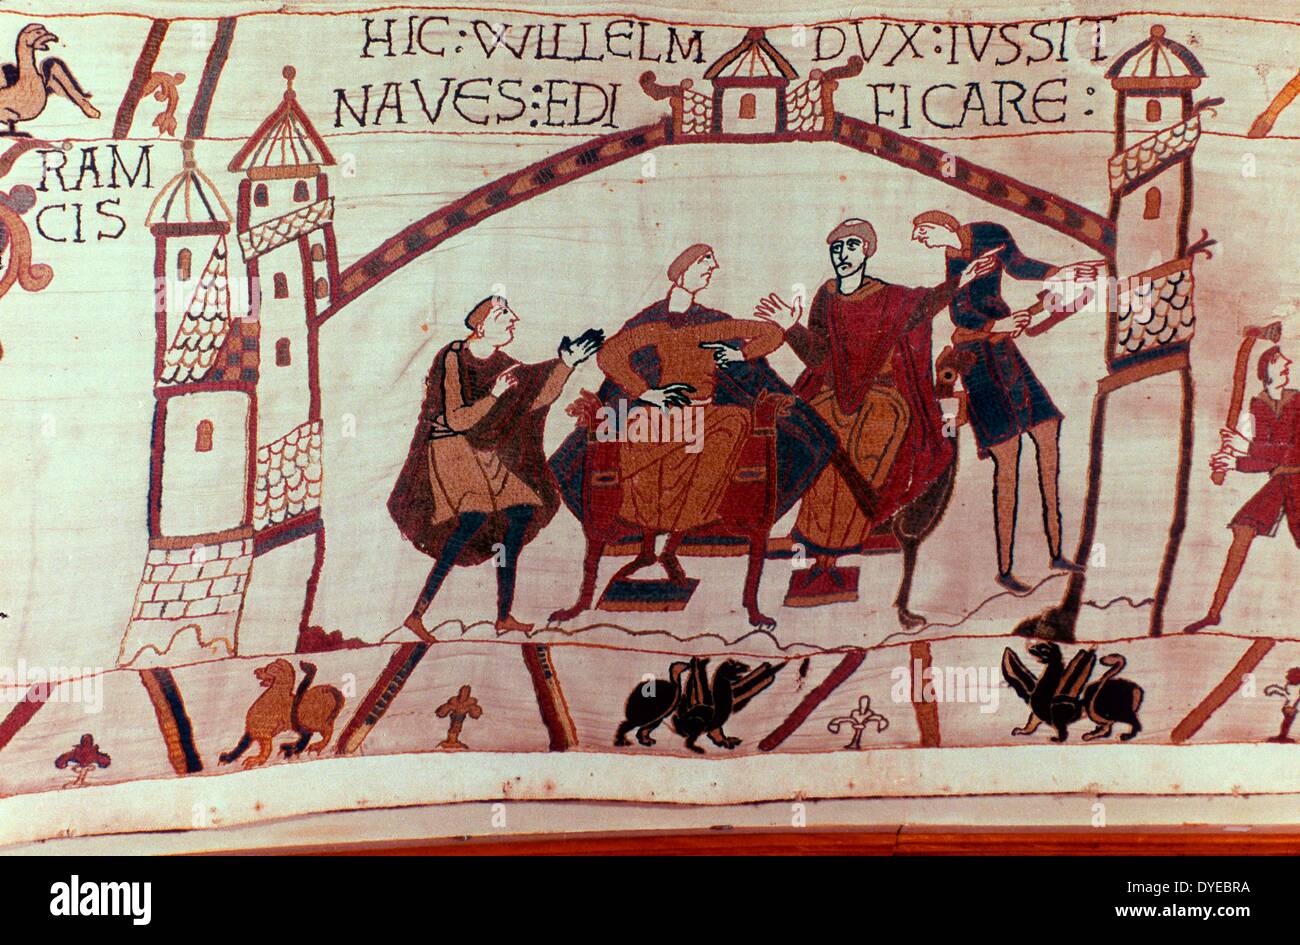 Escena del Bayeux Tapestry un paño bordado casi 70 metros (230 pies) de largo, que describe los acontecimientos que precedieron a la conquista Normanda de Inglaterra sobre Guillermo, Duque de Normandía y Harold, Conde de Wessex, más tarde el Rey de Inglaterra, y culminó en la batalla de Hastings en 1066 Foto de stock